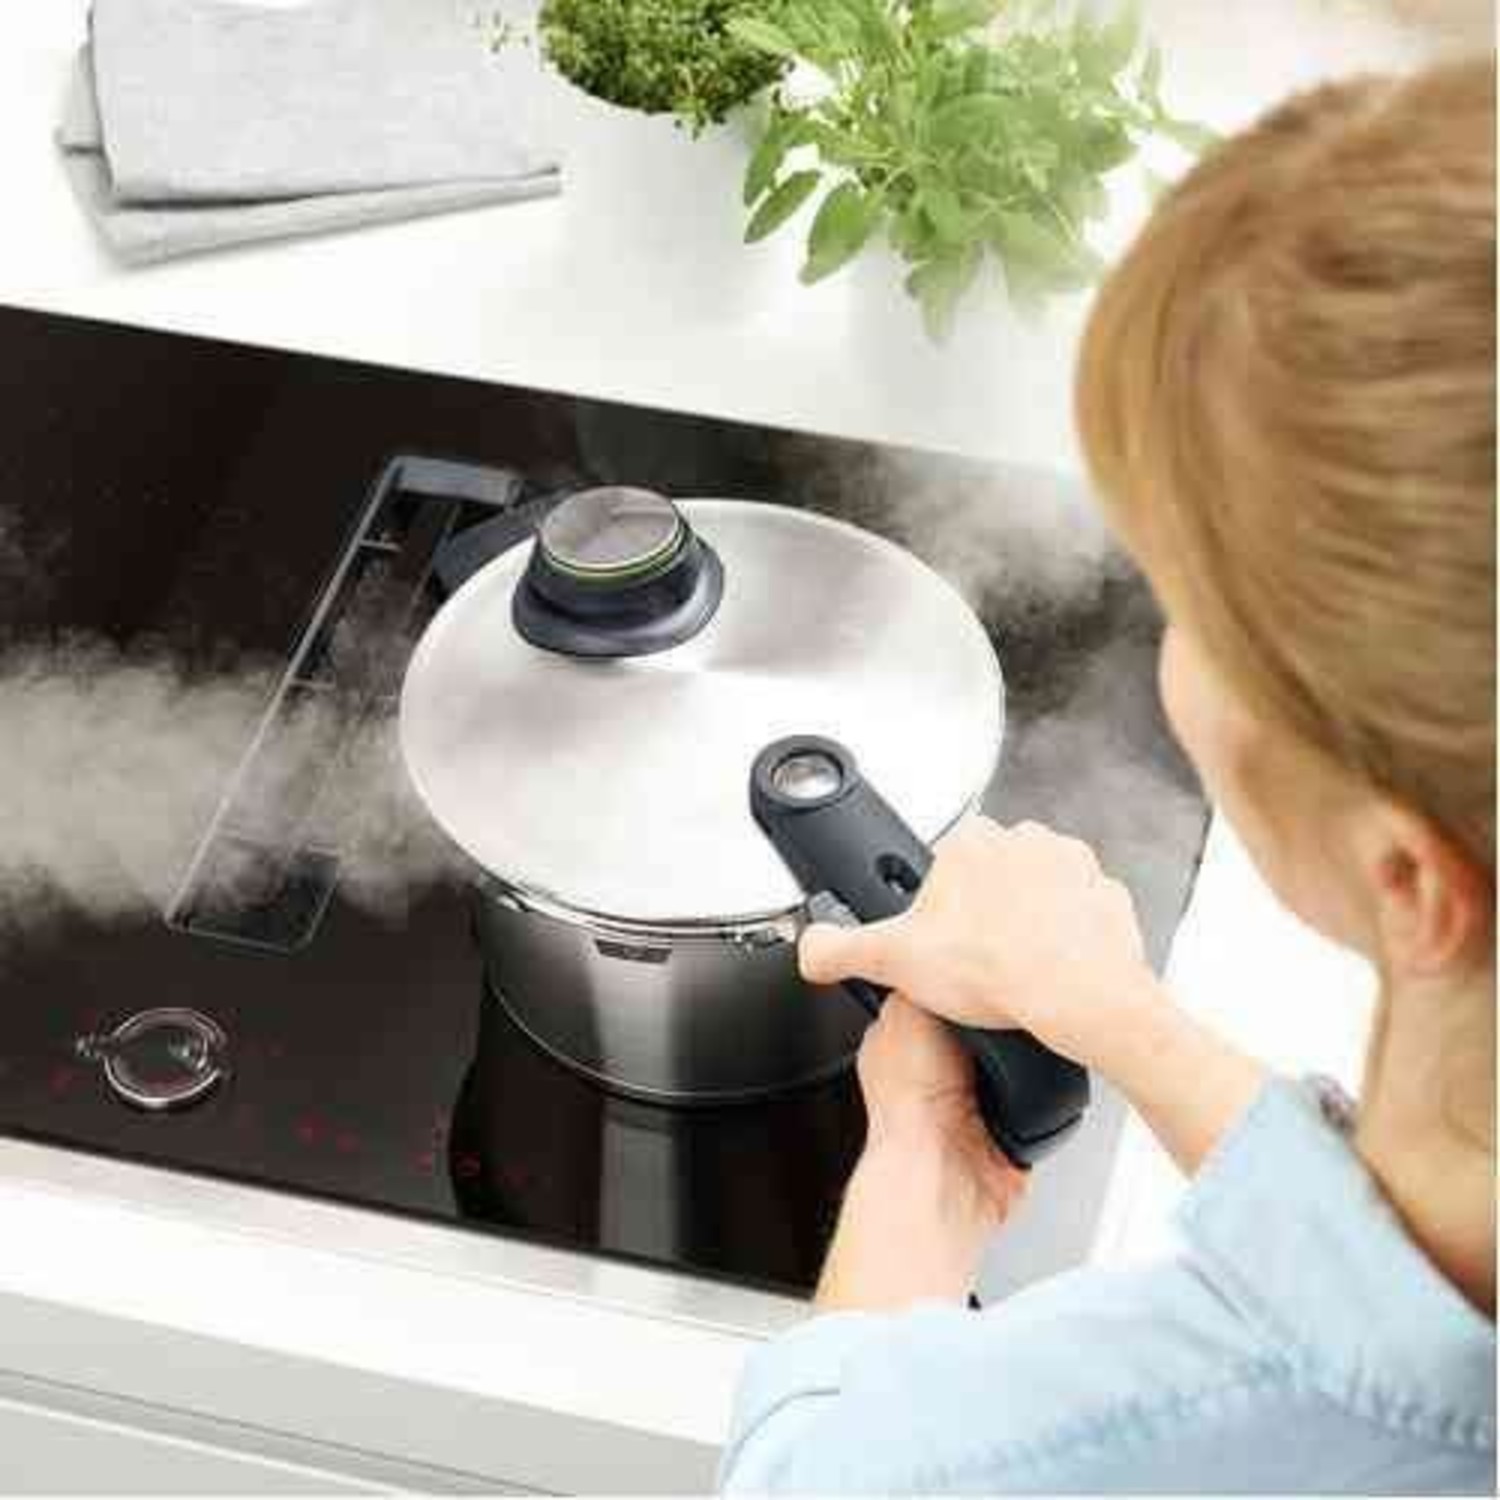 https://cdn.shoplightspeed.com/shops/633447/files/49678842/1500x4000x3/85-quart-pressure-cooker.jpg